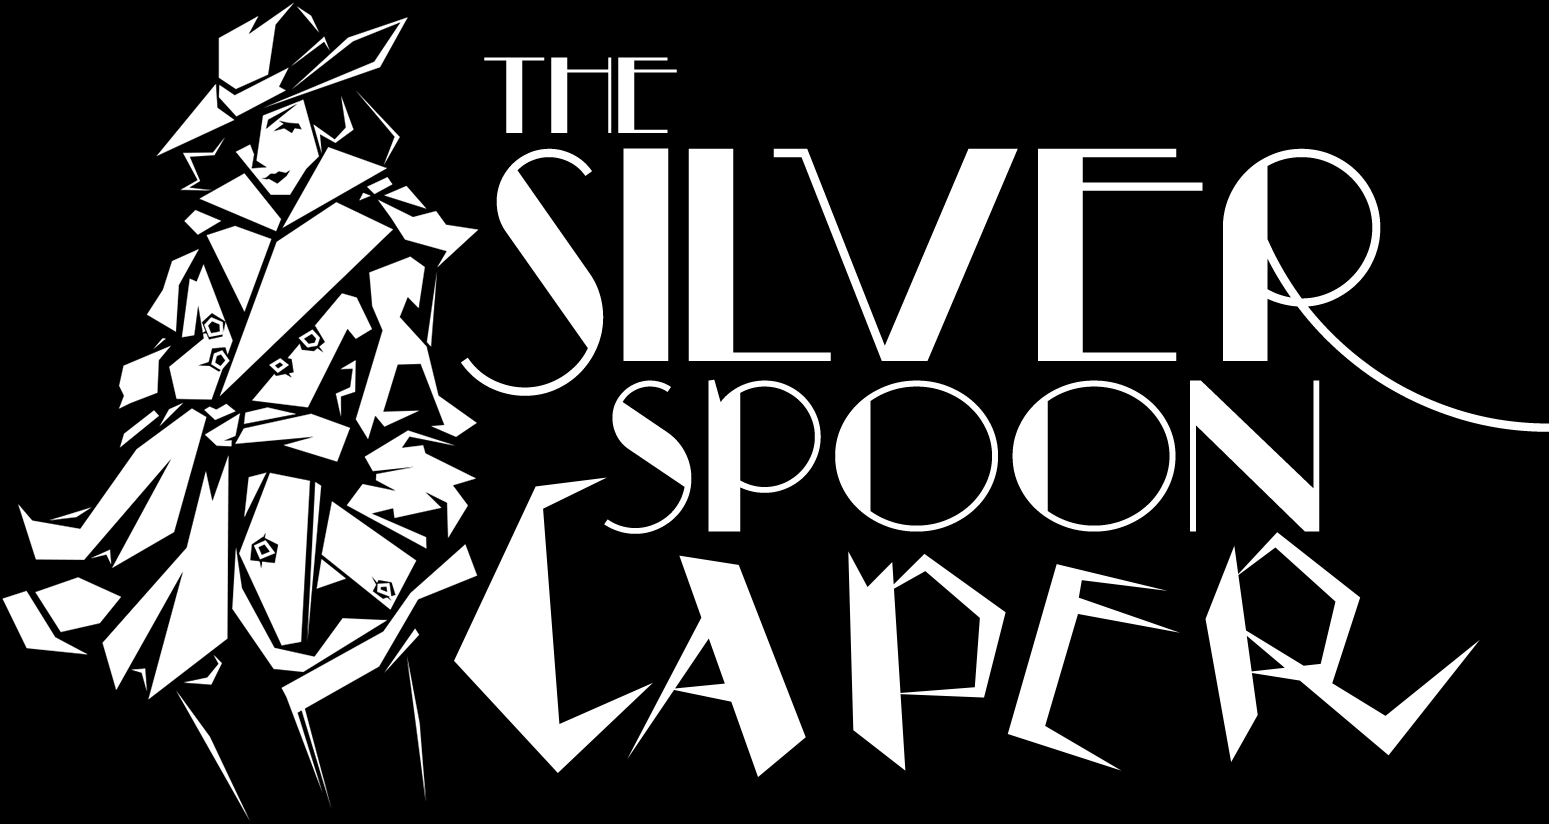 The Silver Spoon Caper